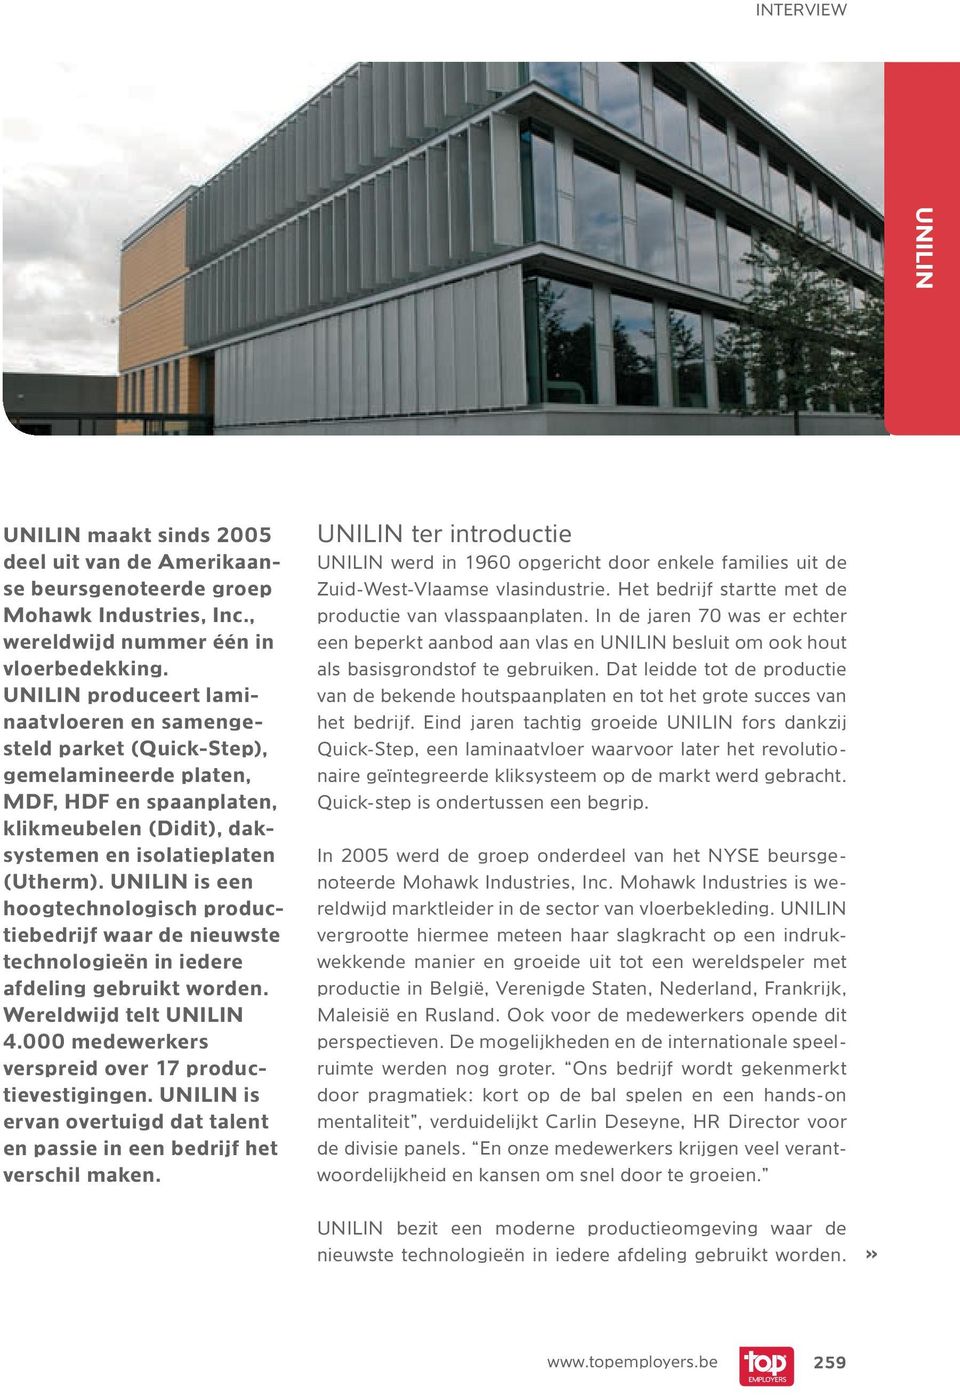 UNILIN is een hoogtechnologisch productiebedrijf waar de nieuwste technologieën in iedere afdeling gebruikt worden. Wereldwijd telt UNILIN 4.000 medewerkers verspreid over 17 productievestigingen.